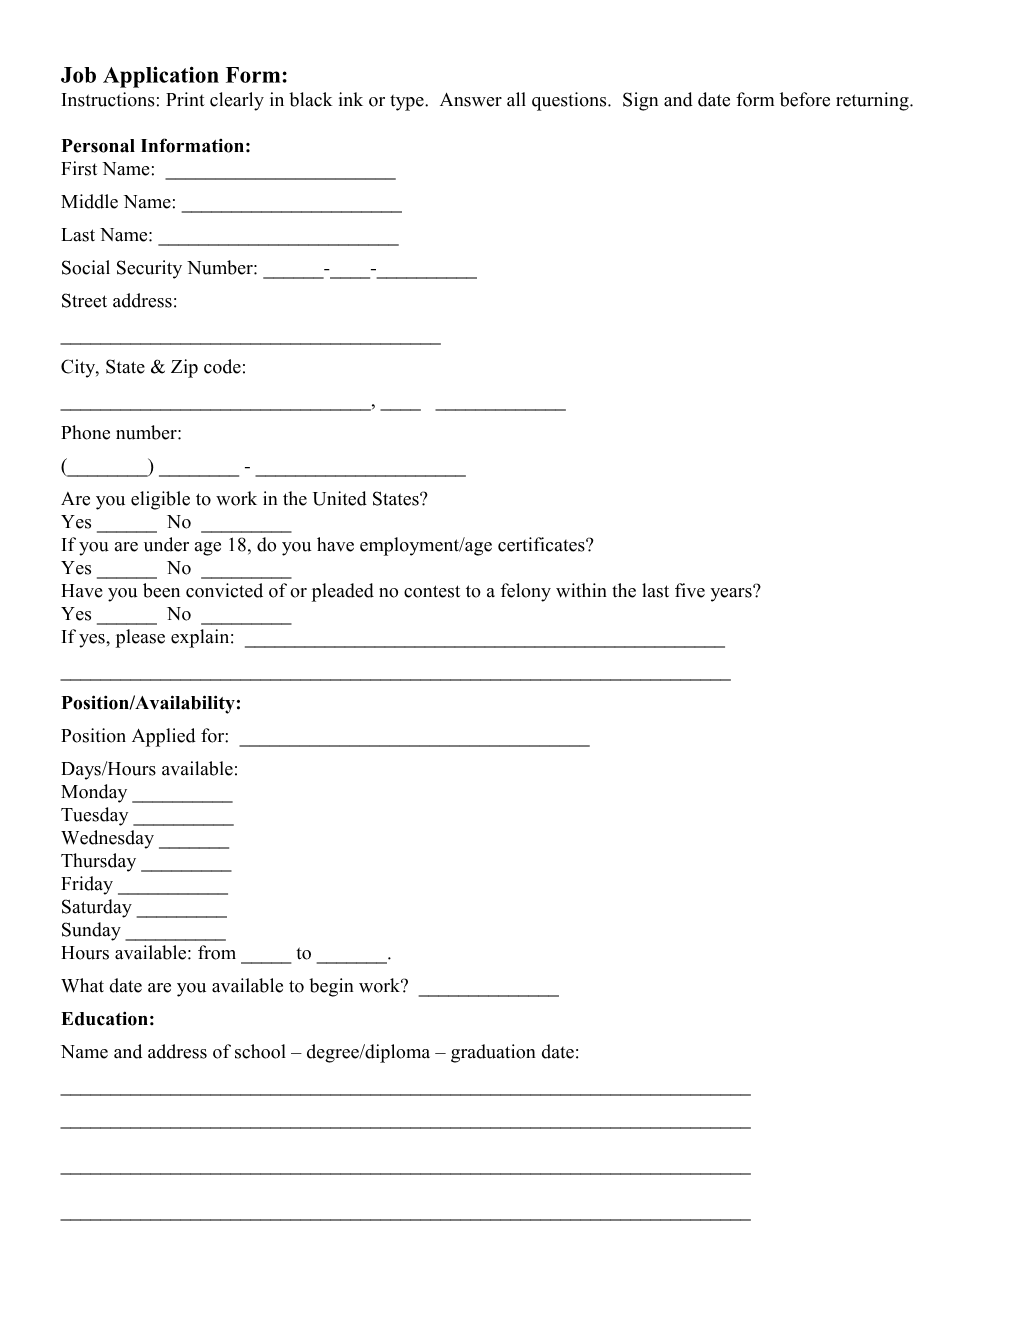 Job Application Form s9